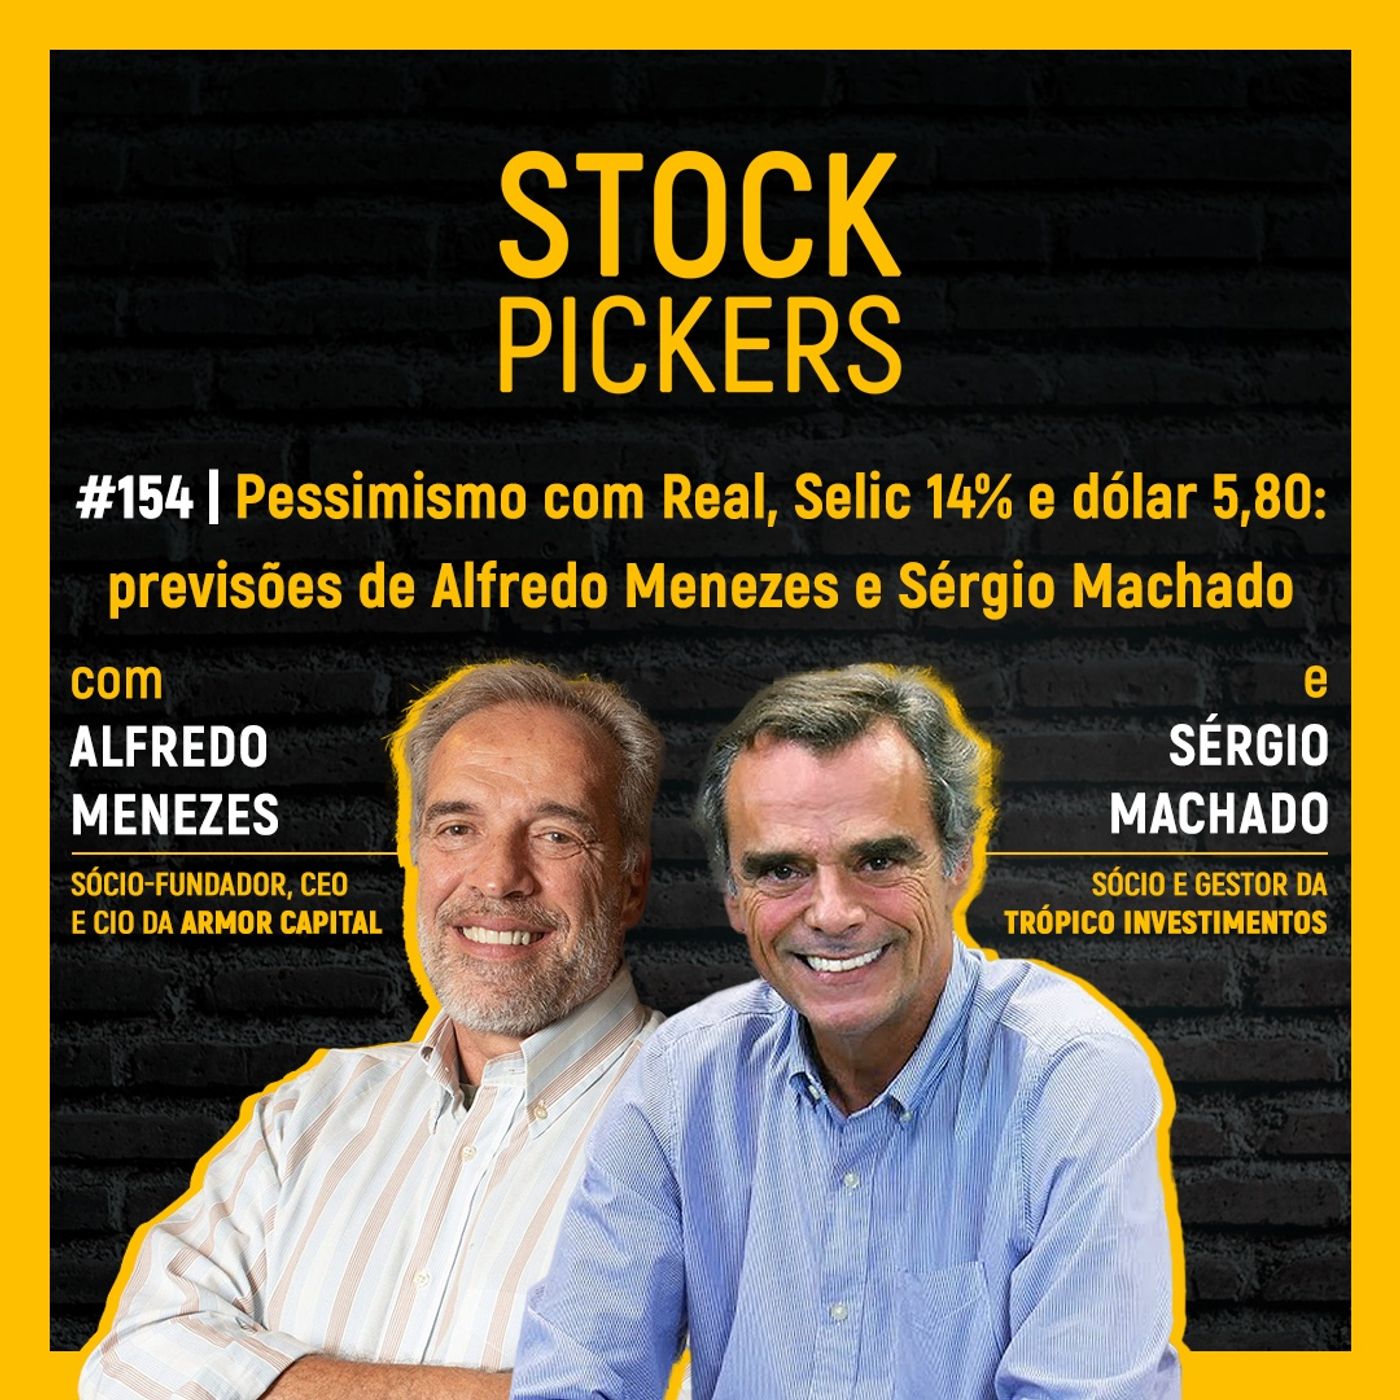 #154 Pessimismo com Real, Selic 14% e dólar 5,80: previsões de Alfredo Menezes e Sérgio Machado